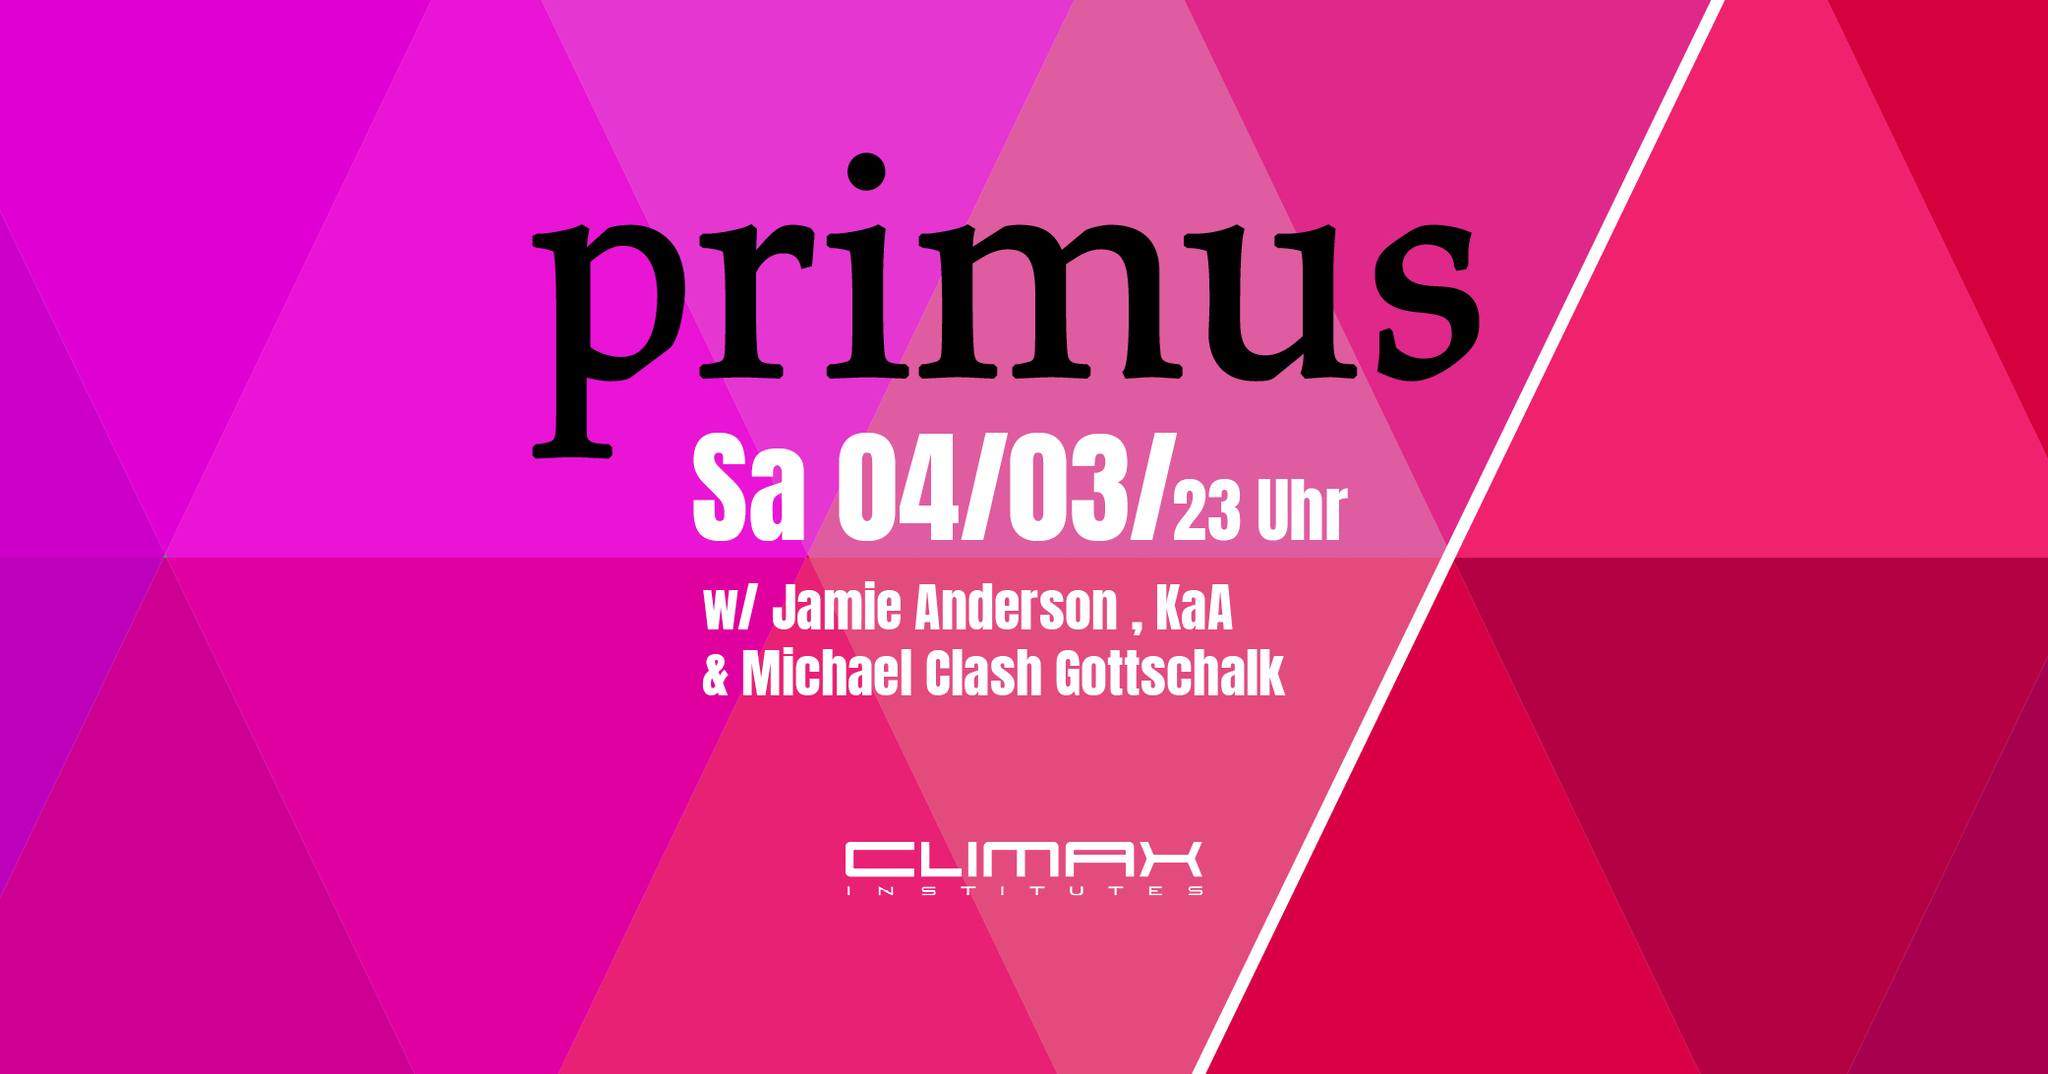 PRIMUS with Jamie Anderson (Flash, Berlin) - Página frontal